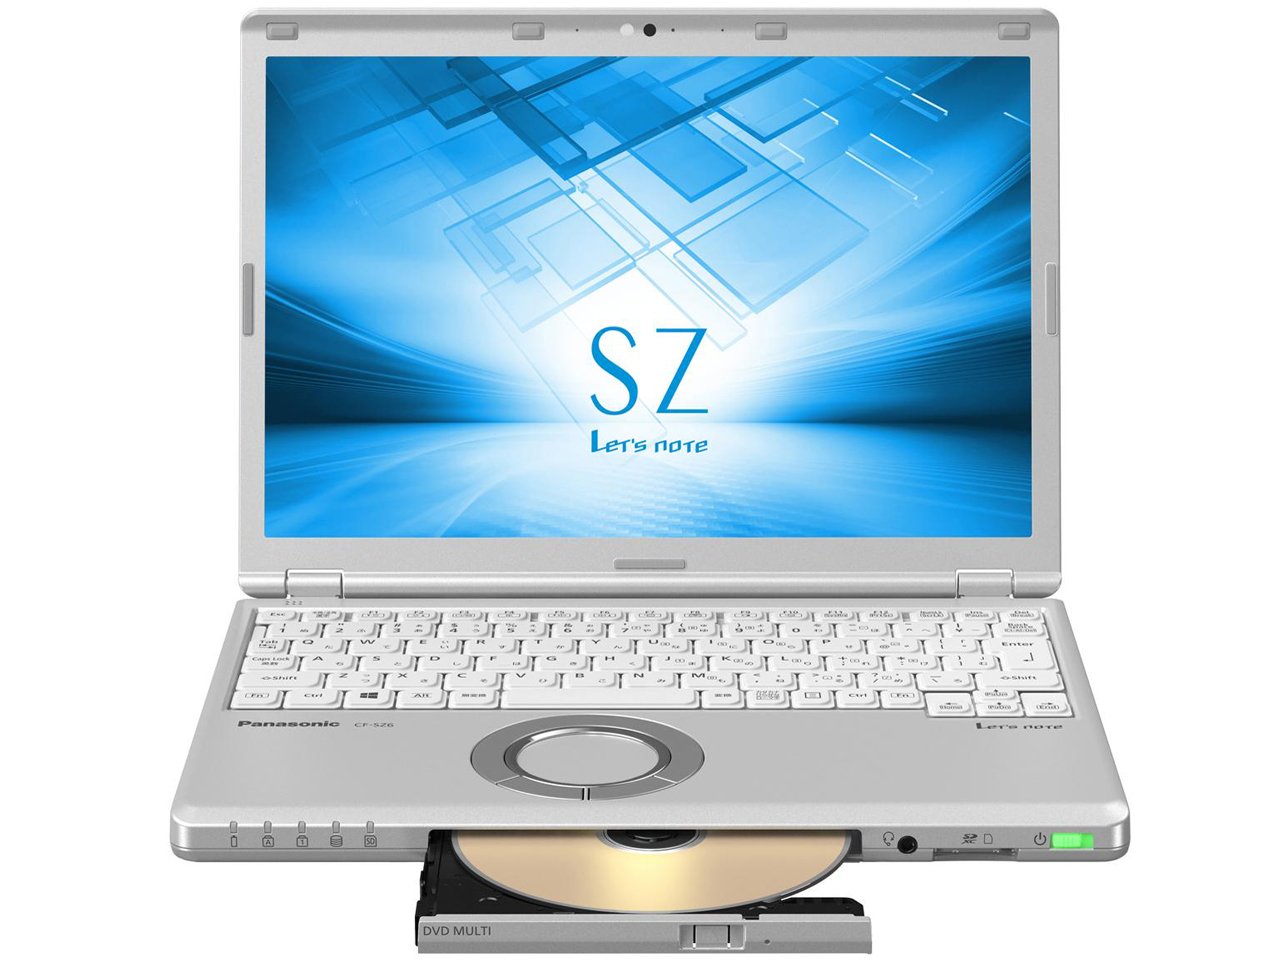 価格.com - Let's note SZ6 CF-SZ6RDQVS の製品画像